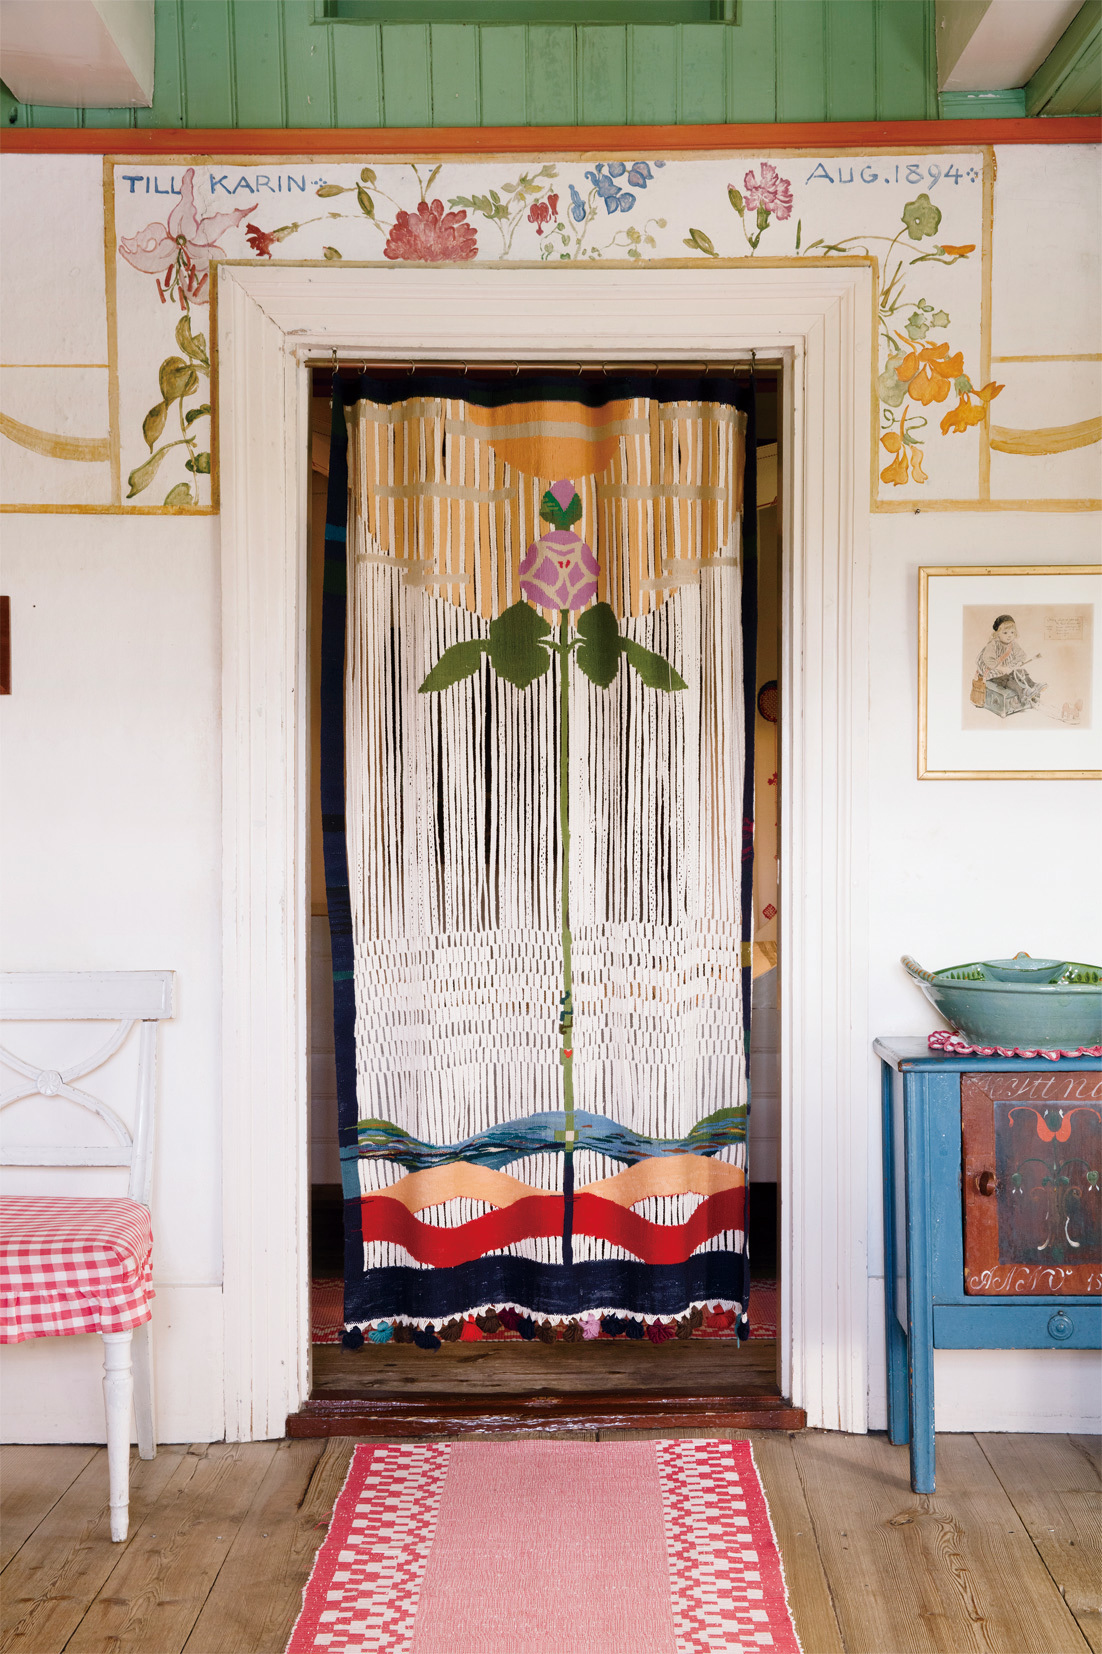 カーリンがデザインした扉のカーテン 《愛の薔薇》 カール・ラーション・ゴーデン (C) Carl Larsson-gården	